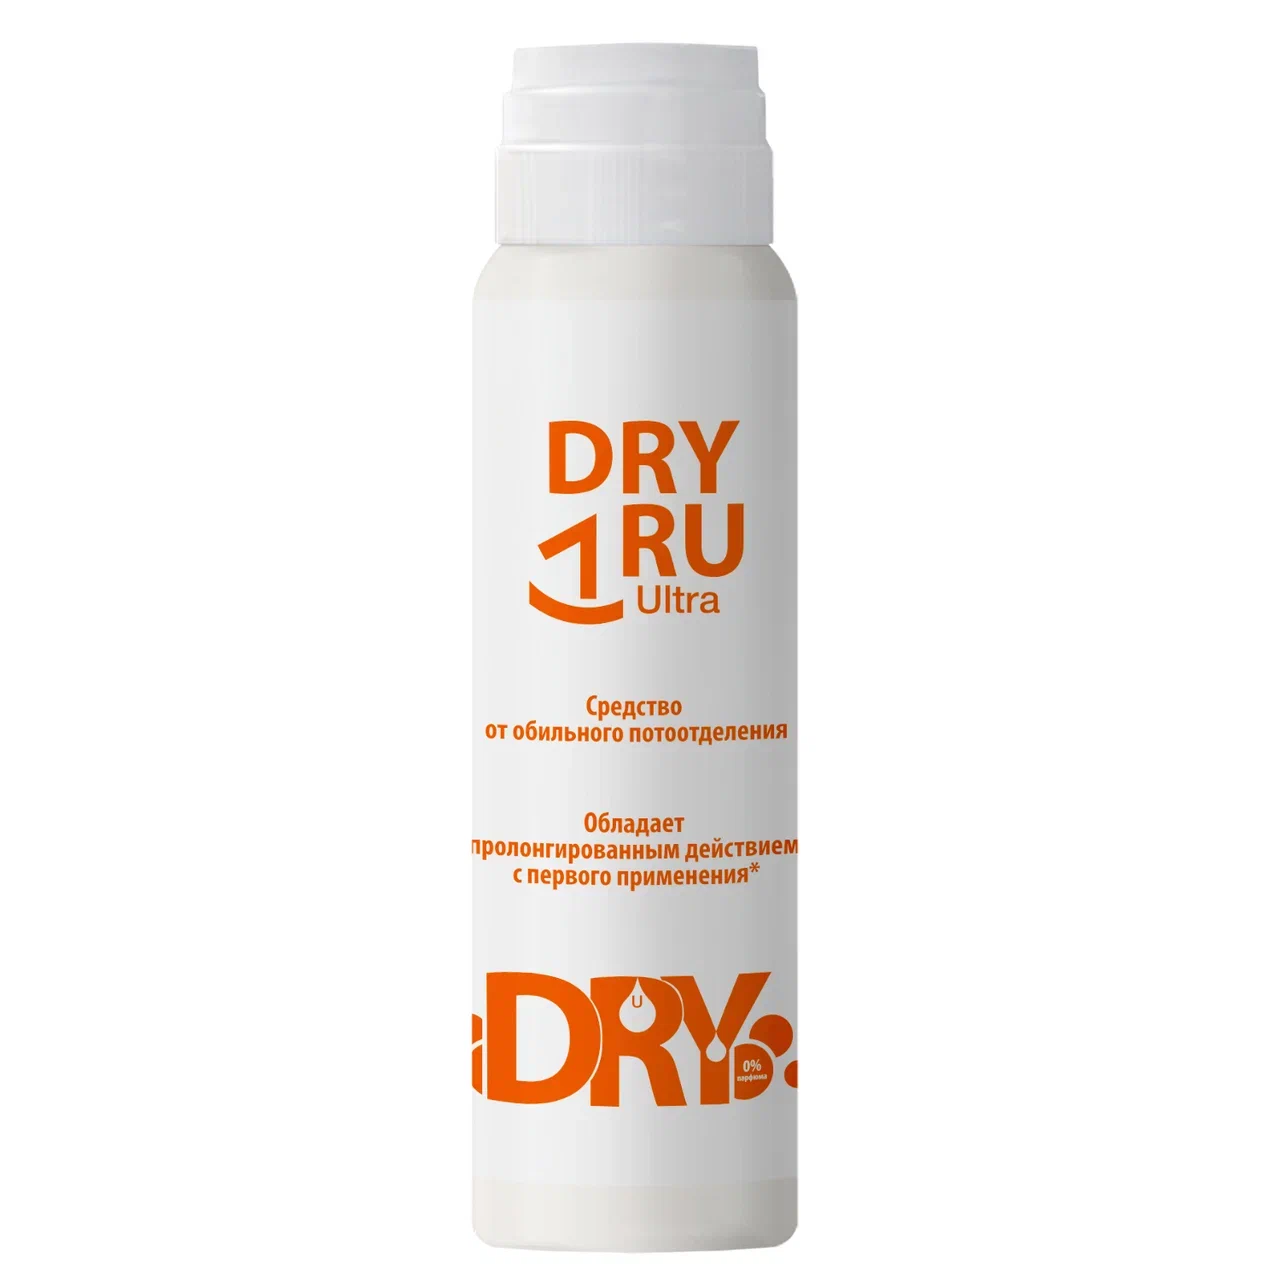 Дезодорант DRY RU Ультра от обильного потоотделения, с пролонгированным действием 50 мл